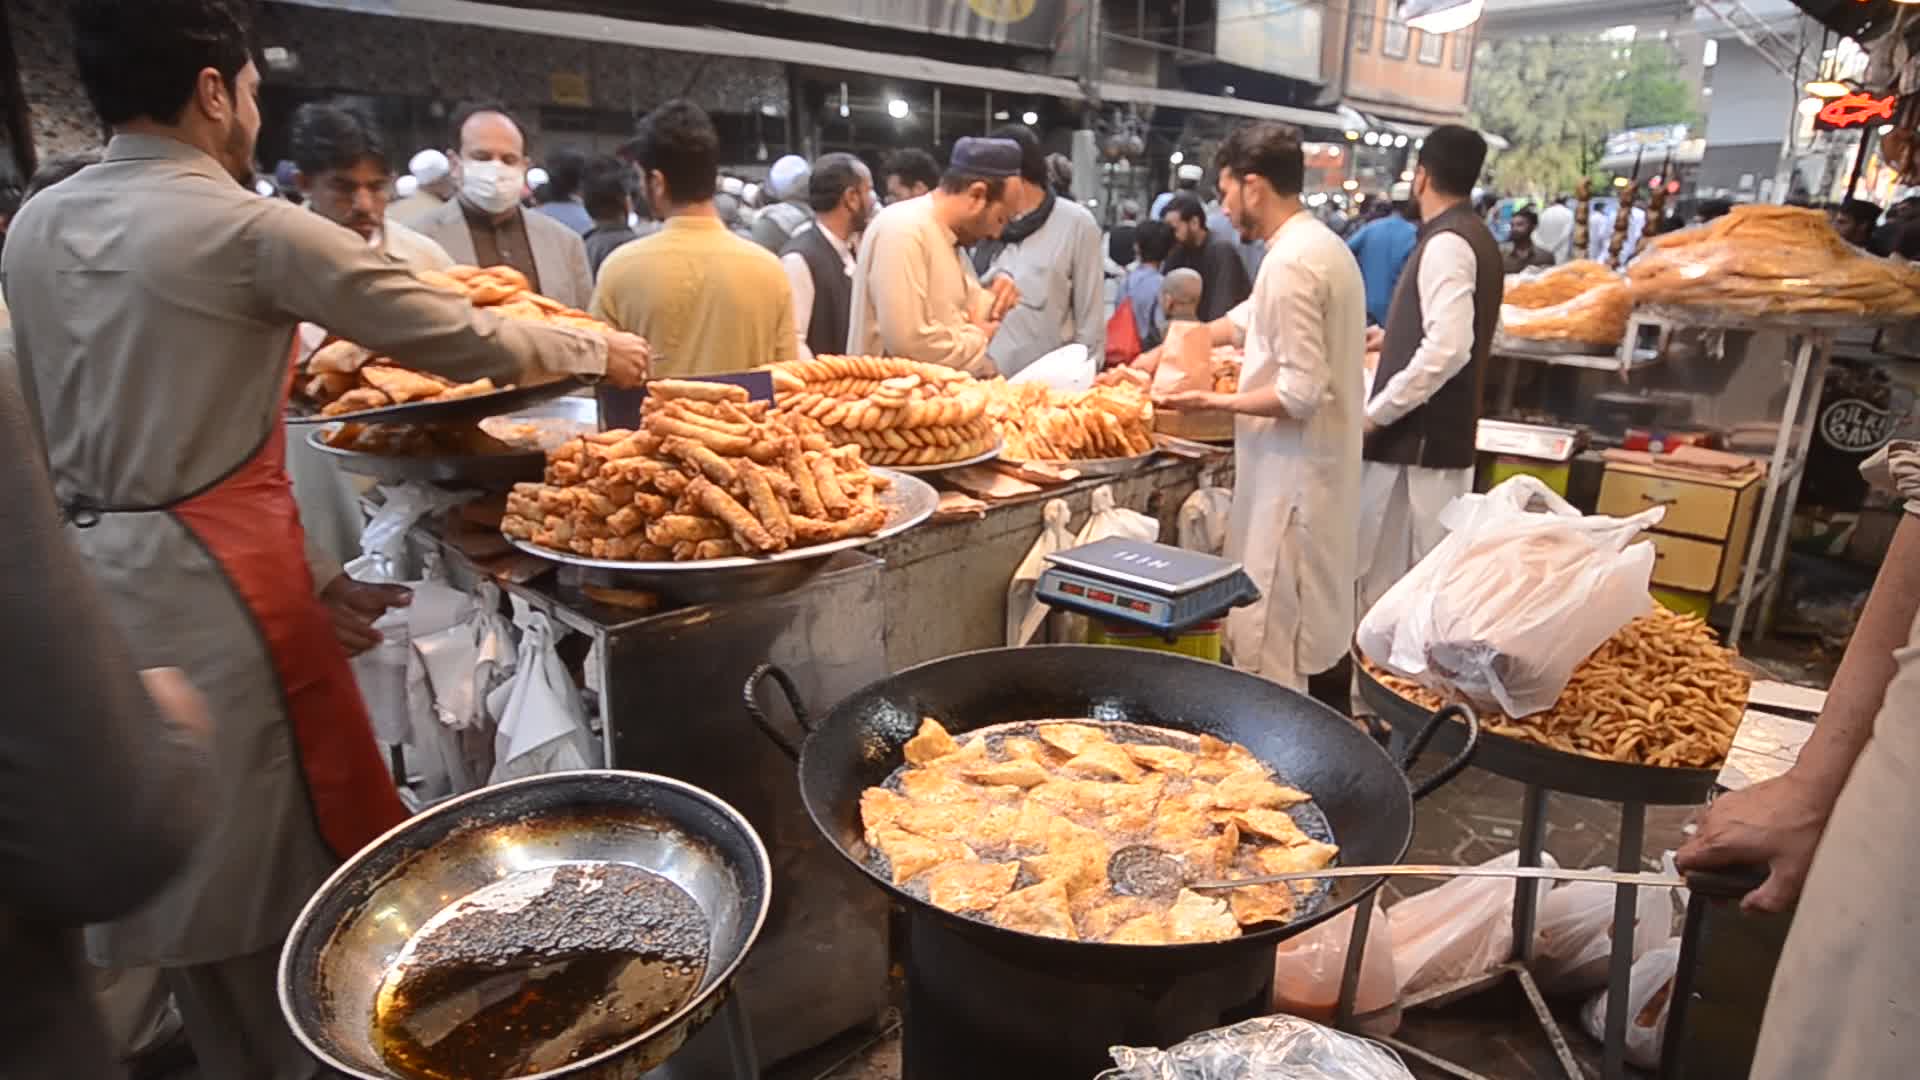 First day of Ramadan in Pakistan